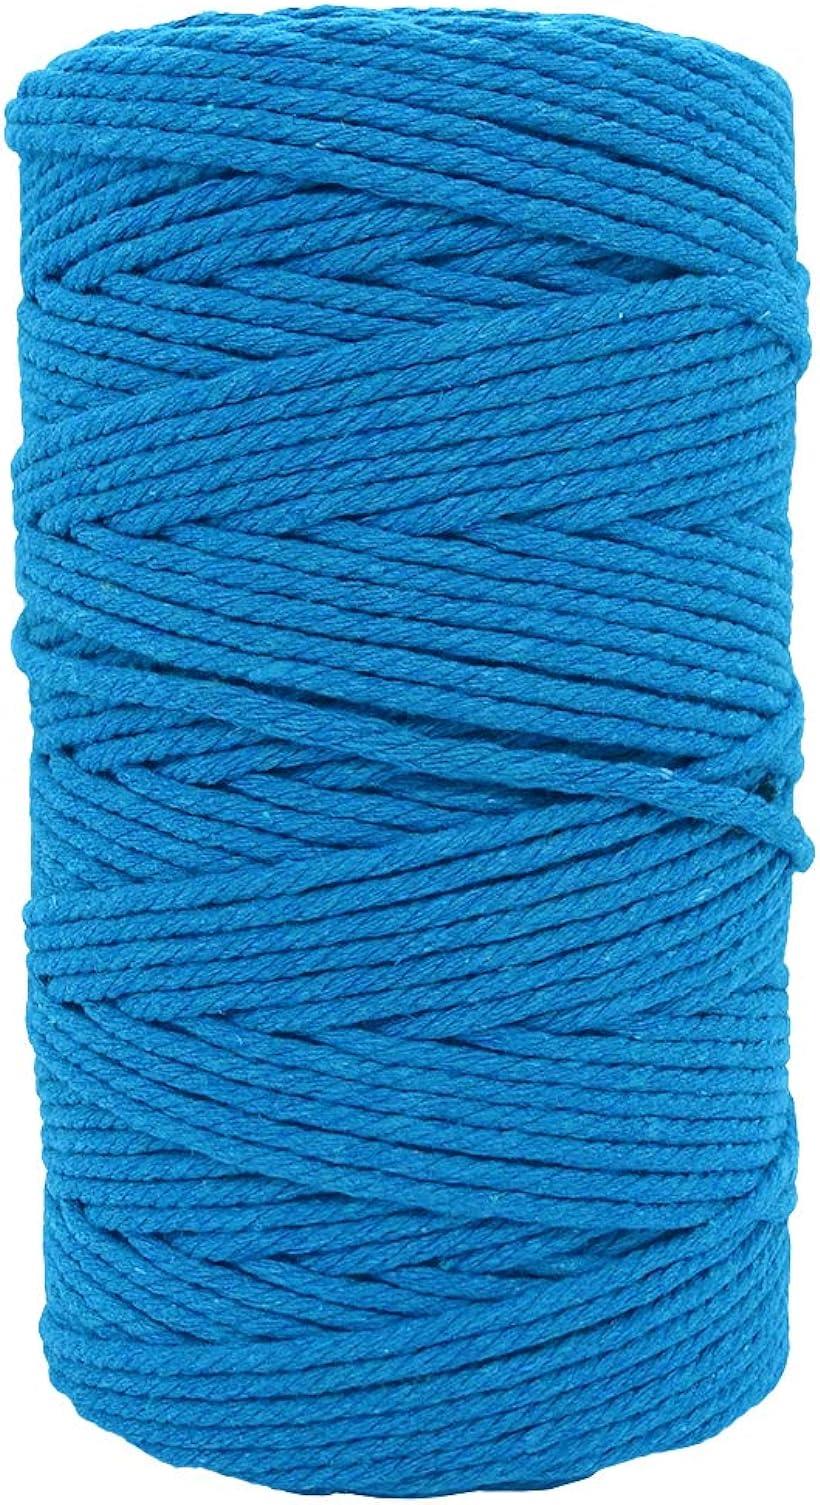 LUCINA JEWEL 半額 ナチュラルコットン マクラメ ロープ 紐 糸 まとめ買い特価 200m 3mm ハンドメイド 壁掛け ブルー